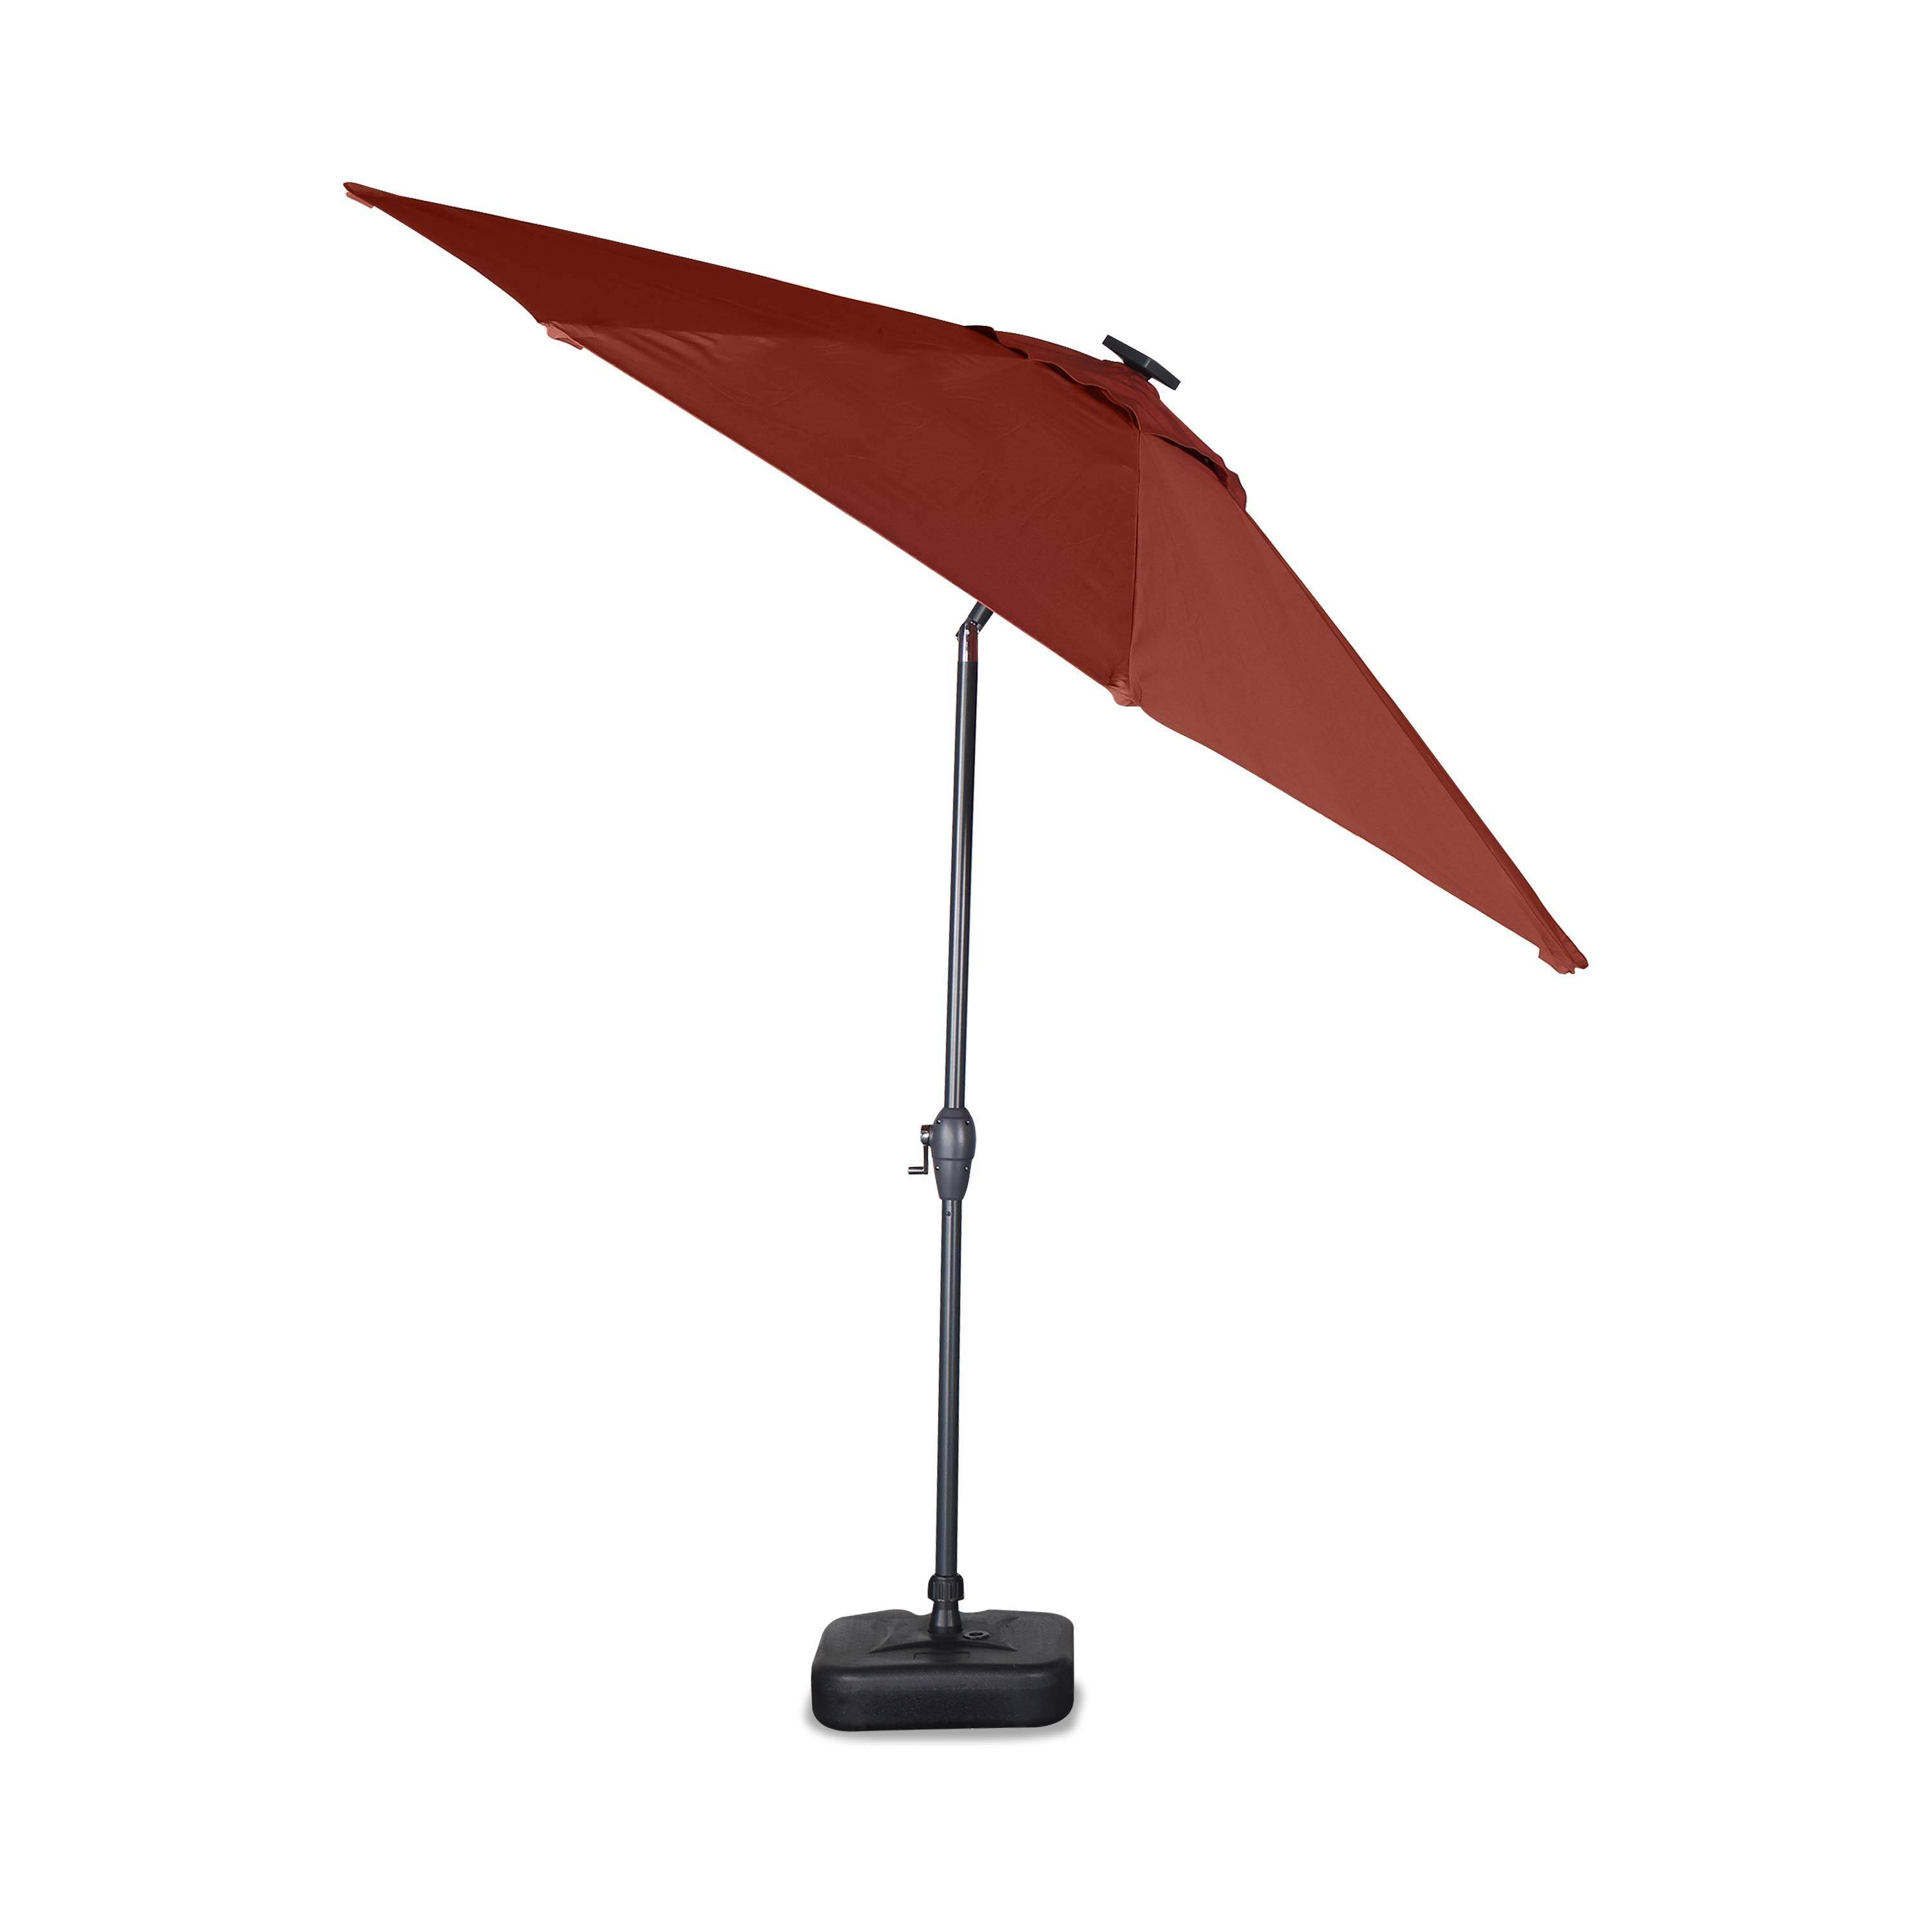 Ronde LED parasol  Ø 2,7m - Helios Terracotta- Stokparasol met geïntegreerde verlichting en hendel Photo3